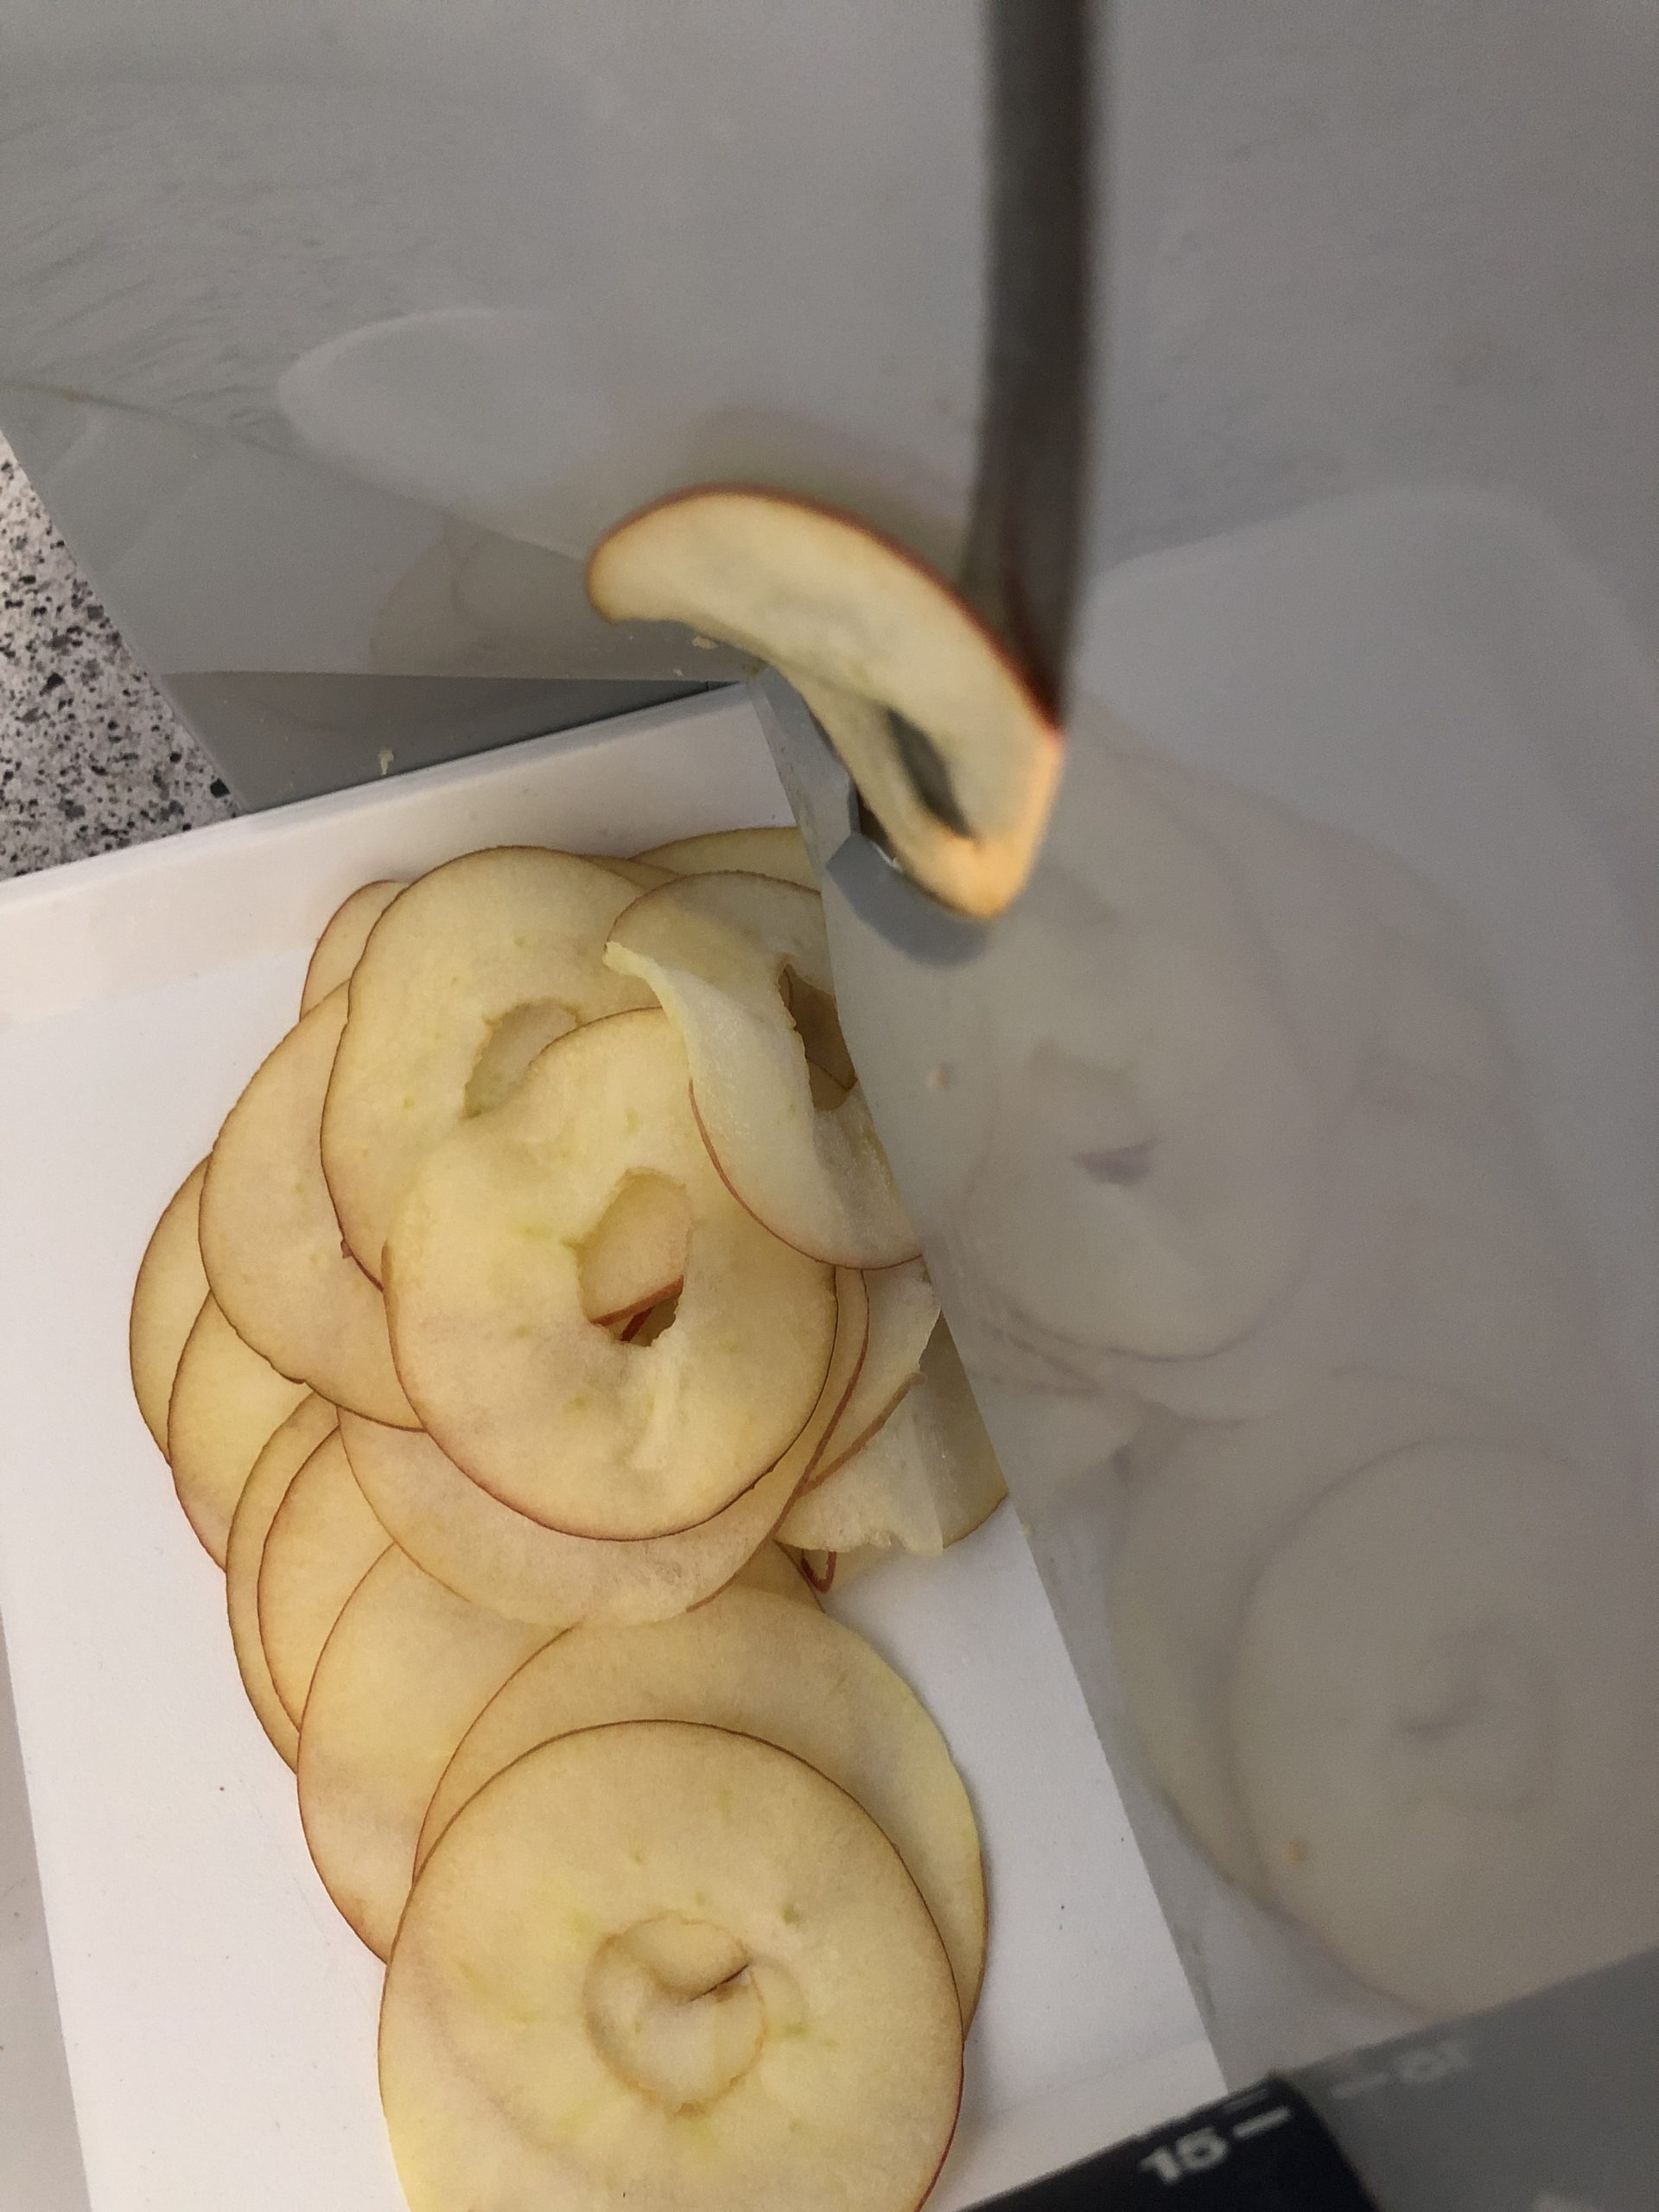 Bild zum Schritt 2 für die Kinder-Beschäftigung: 'Den Apfel mit der Brotschneidemaschine in hauchdünne Scheiben schneiden. ...'